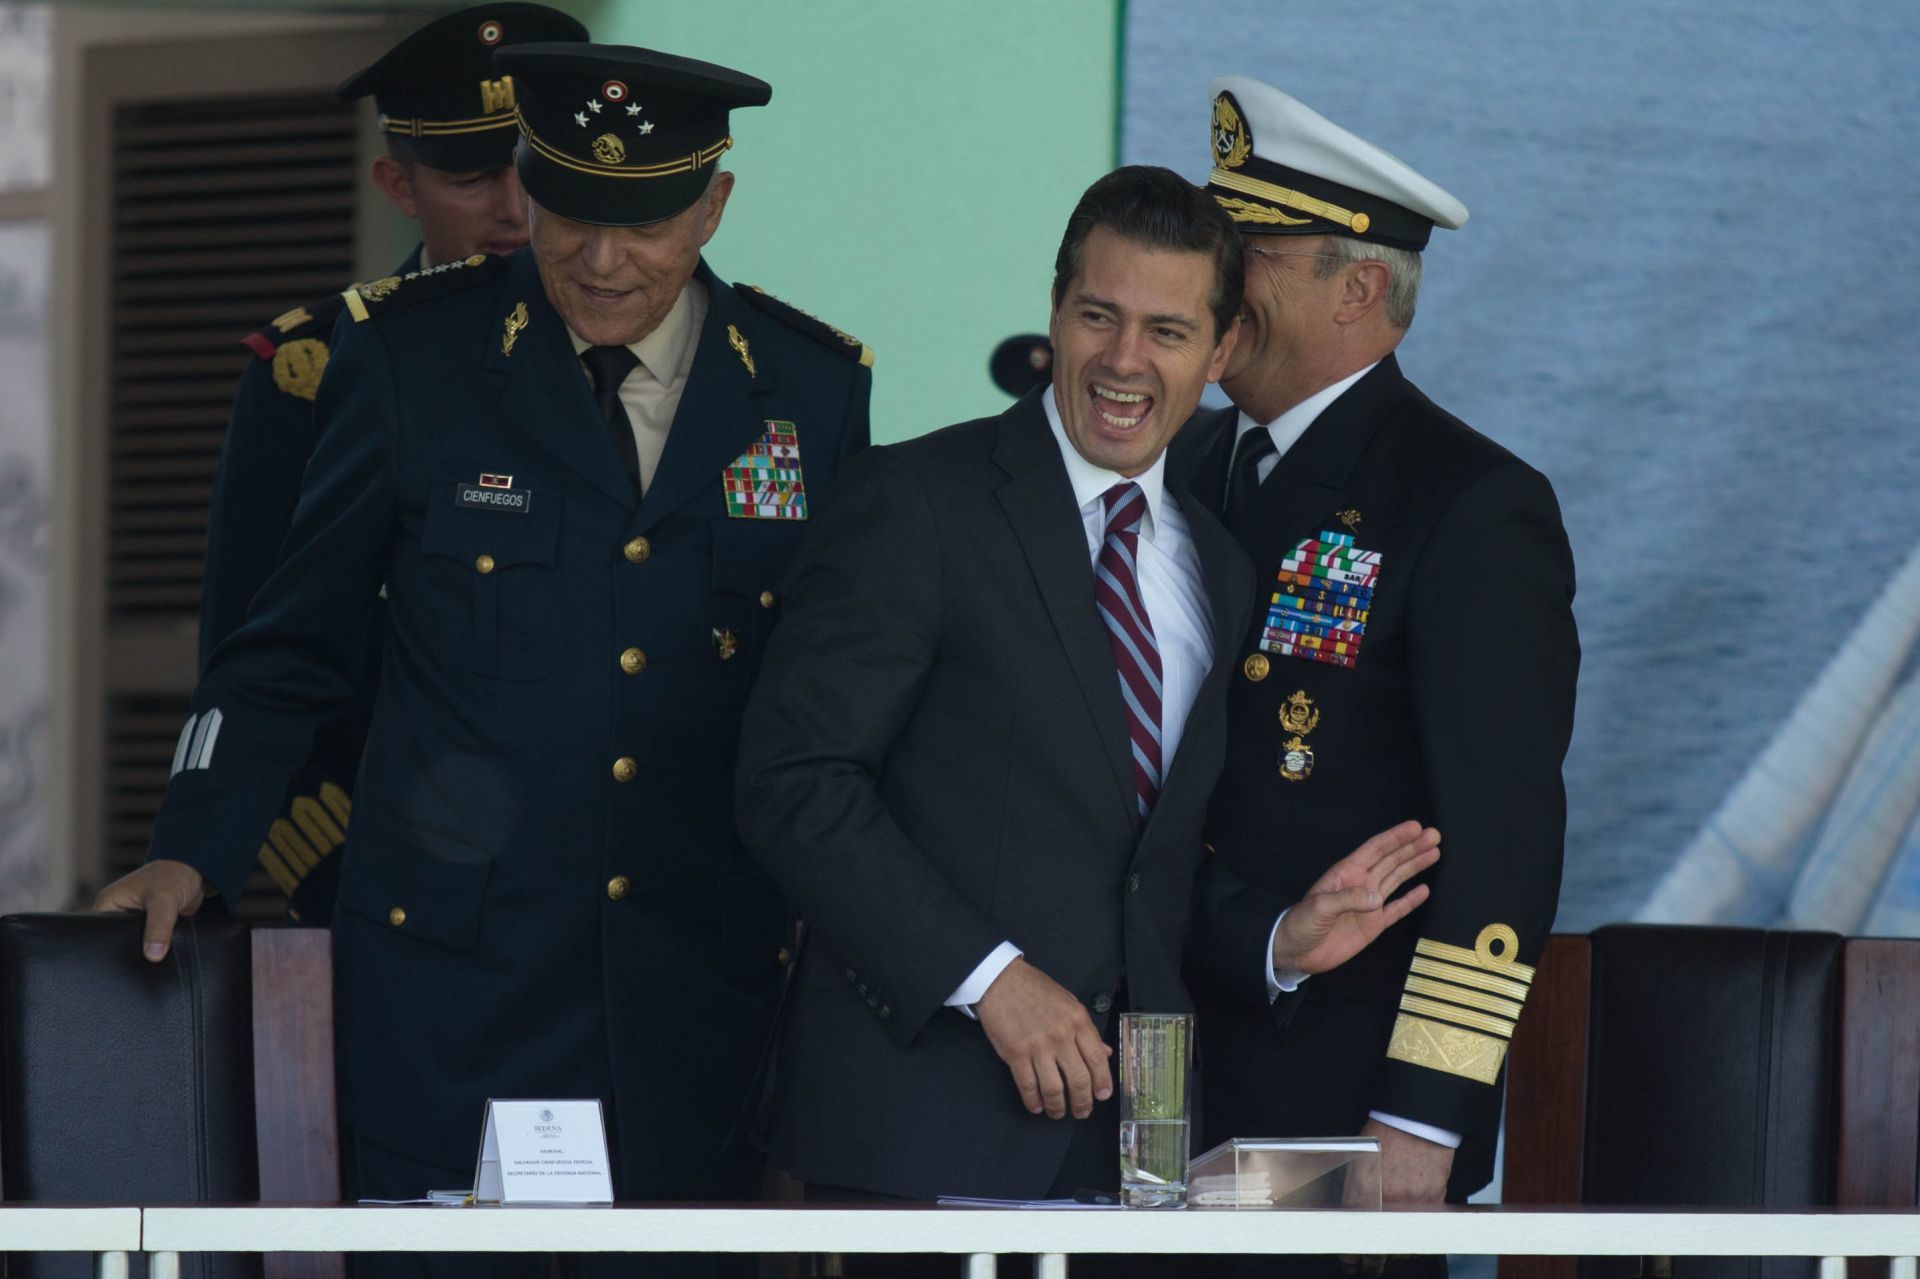 INE cerró caso Odebretch contra Peña Nieto por falta de pruebas